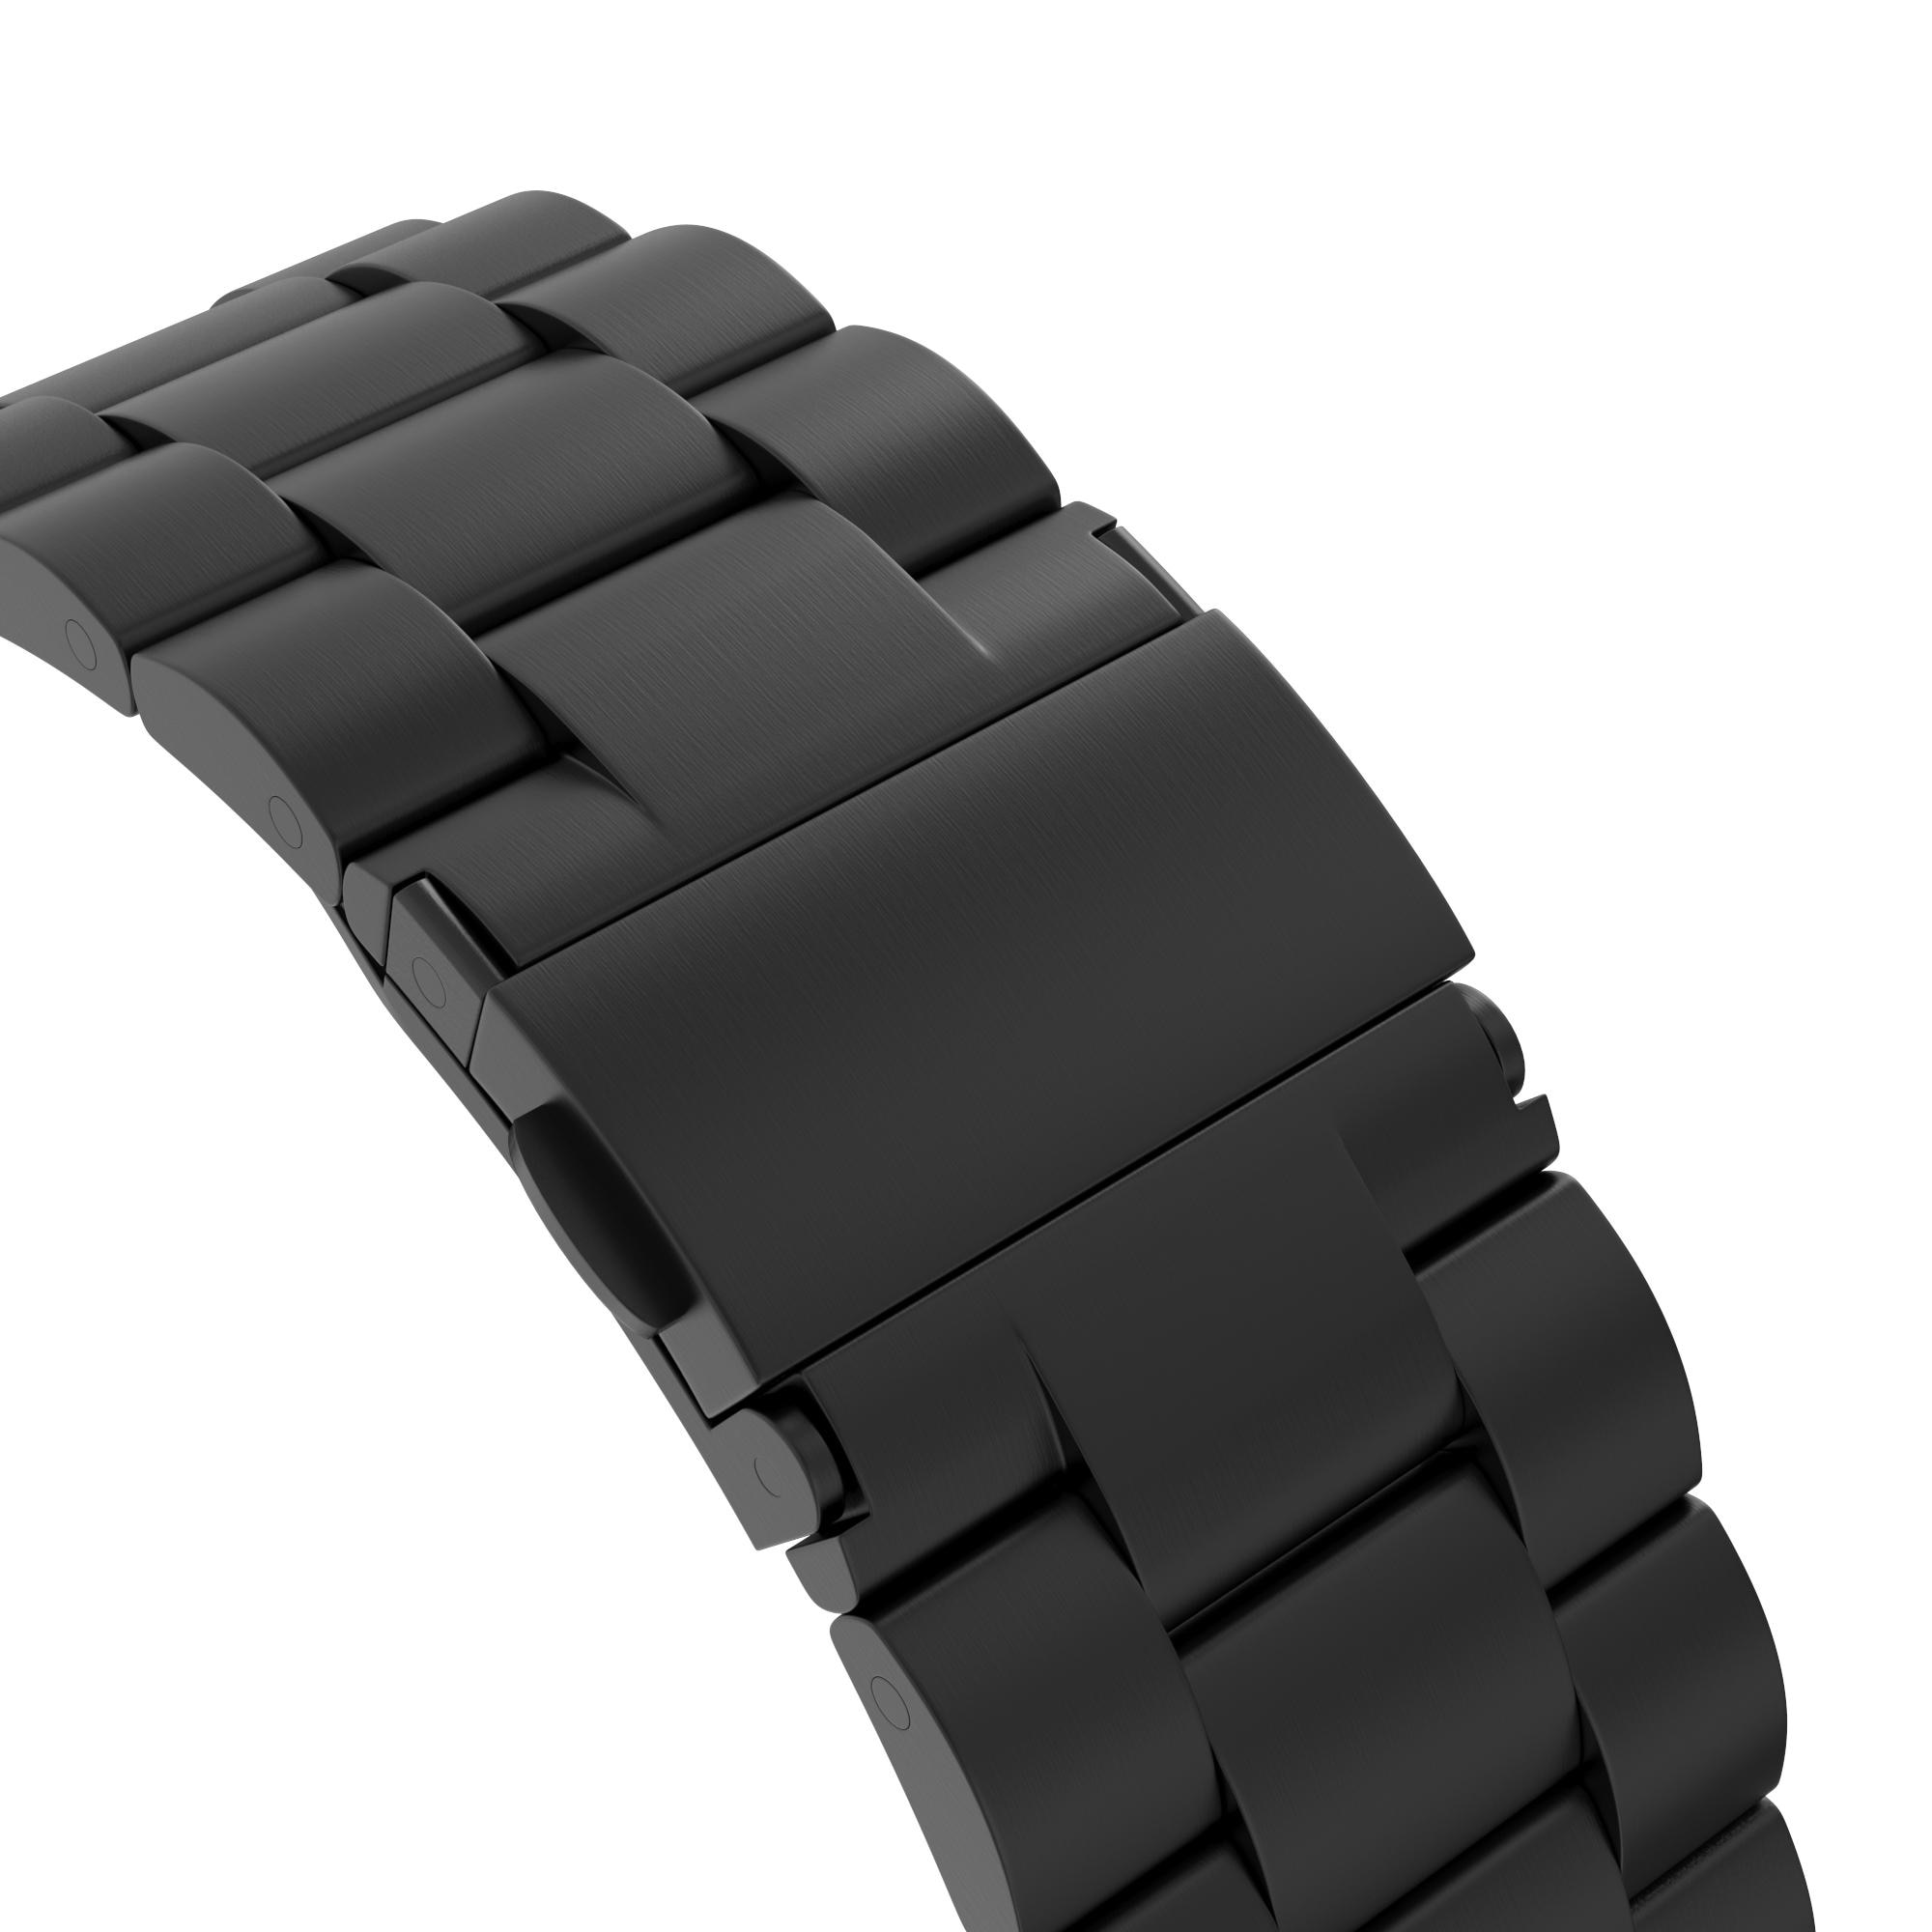 Apple Watch 41mm Series 7 Metalen Armband zwart